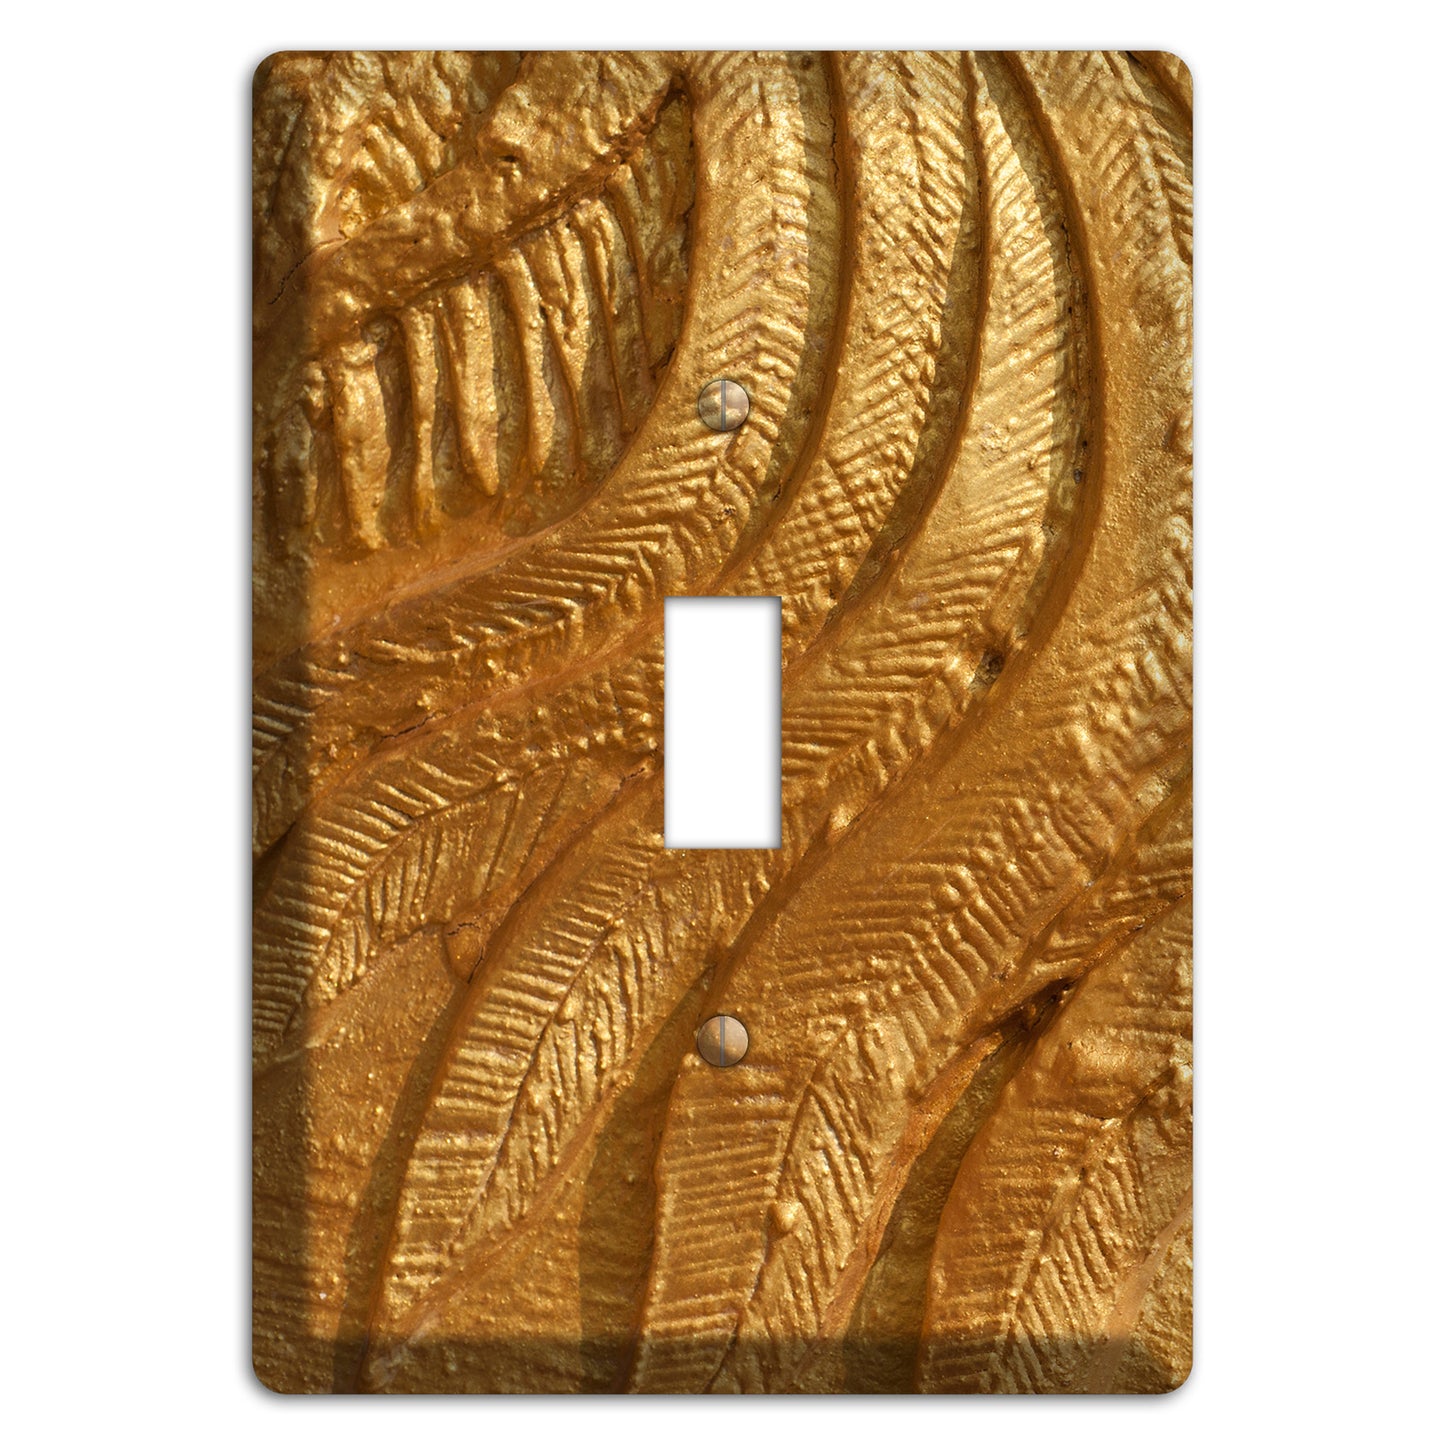 Gold Swirl Concrete Cover Plates